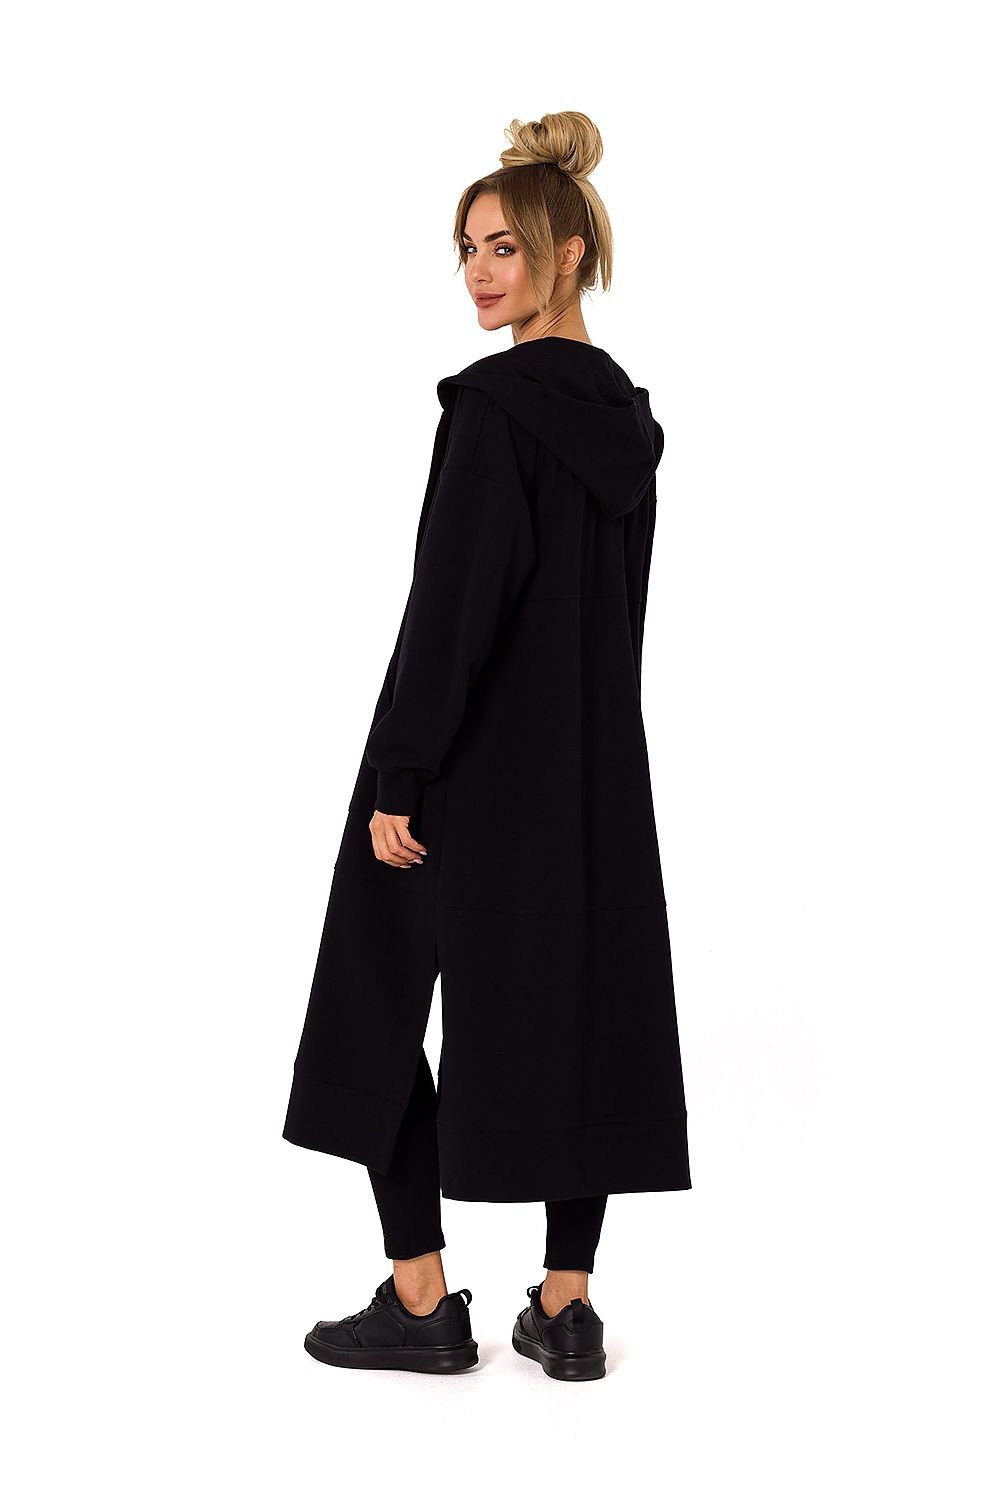 TEEK - Plus Size Zip Hoodie Sweatshirt Coat COAT TEEK MH   